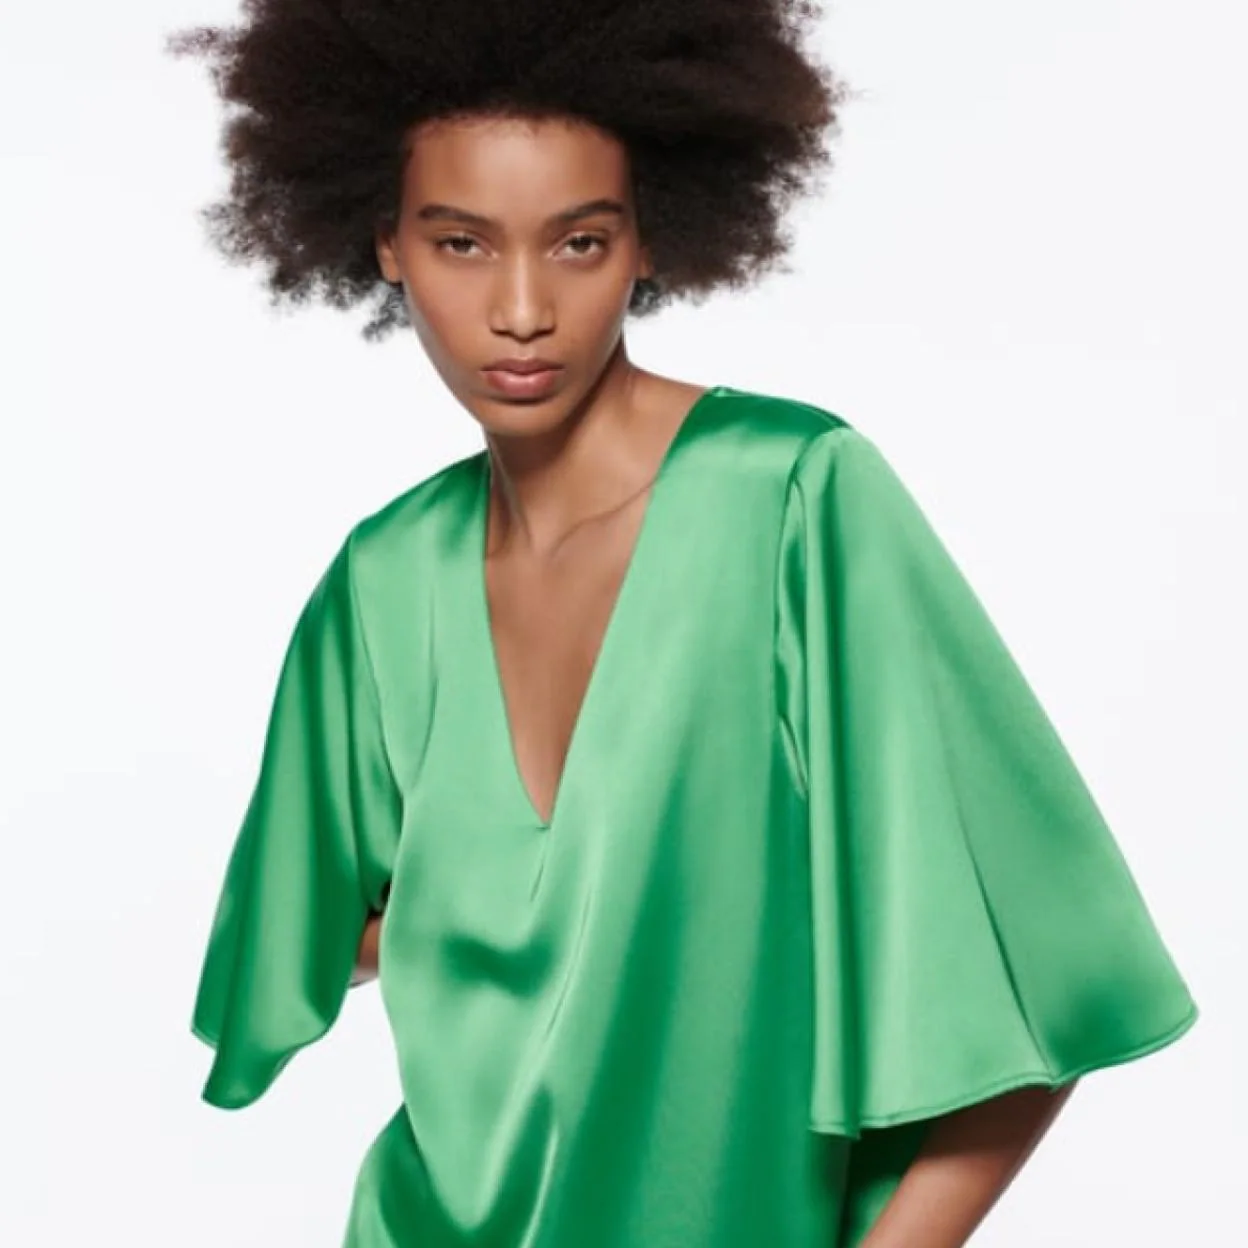 Zara repite con su vestido túnica verde que triunfó en los looks de invitada de 2021 y que favorece y rejuvenece en los tipos de cuerpo | Mujer Hoy